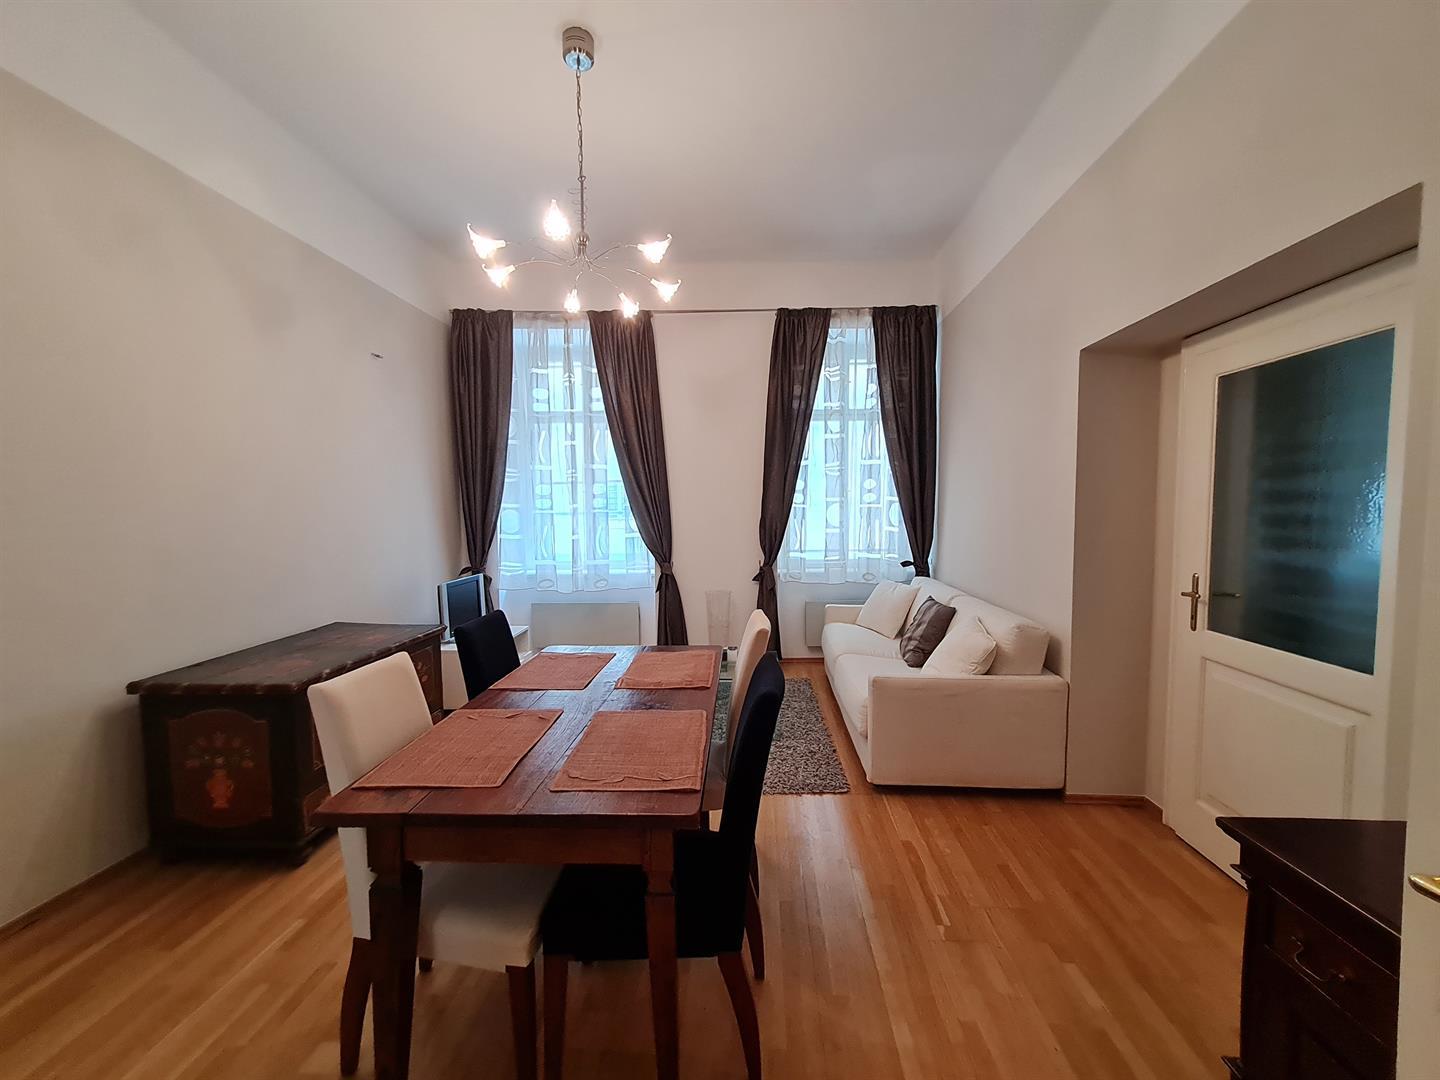 Exklusivně nabízíme na prodej  byt 2+1,60m2 na Malé Straně, Praha 1